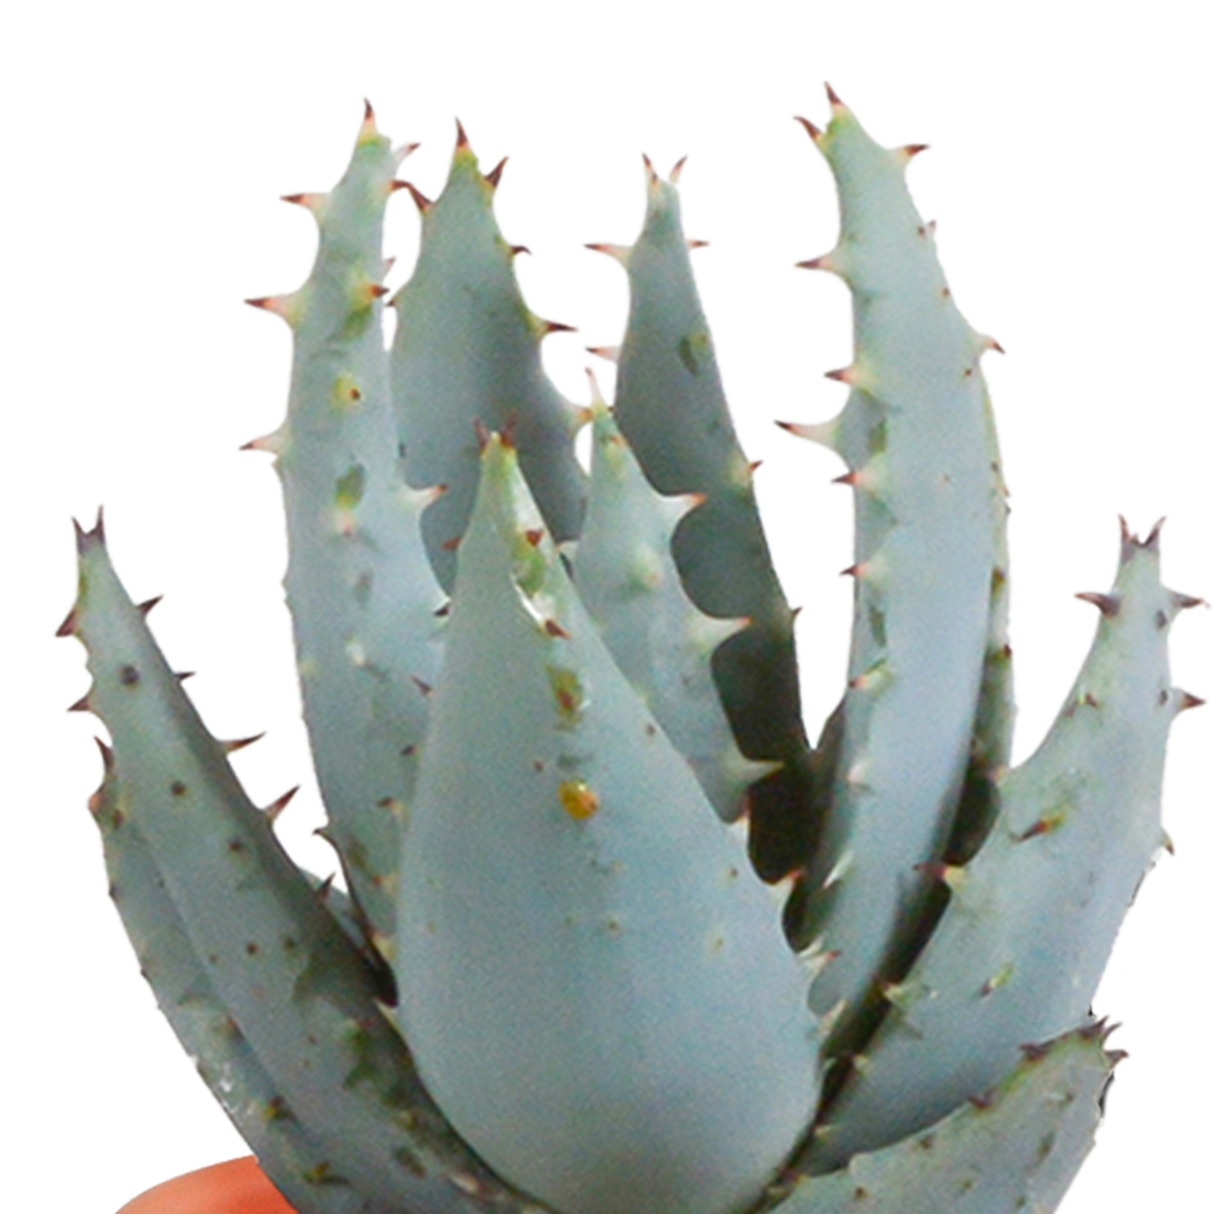 Mix de 15 cactus et leurs caches-pots colorés h13cm